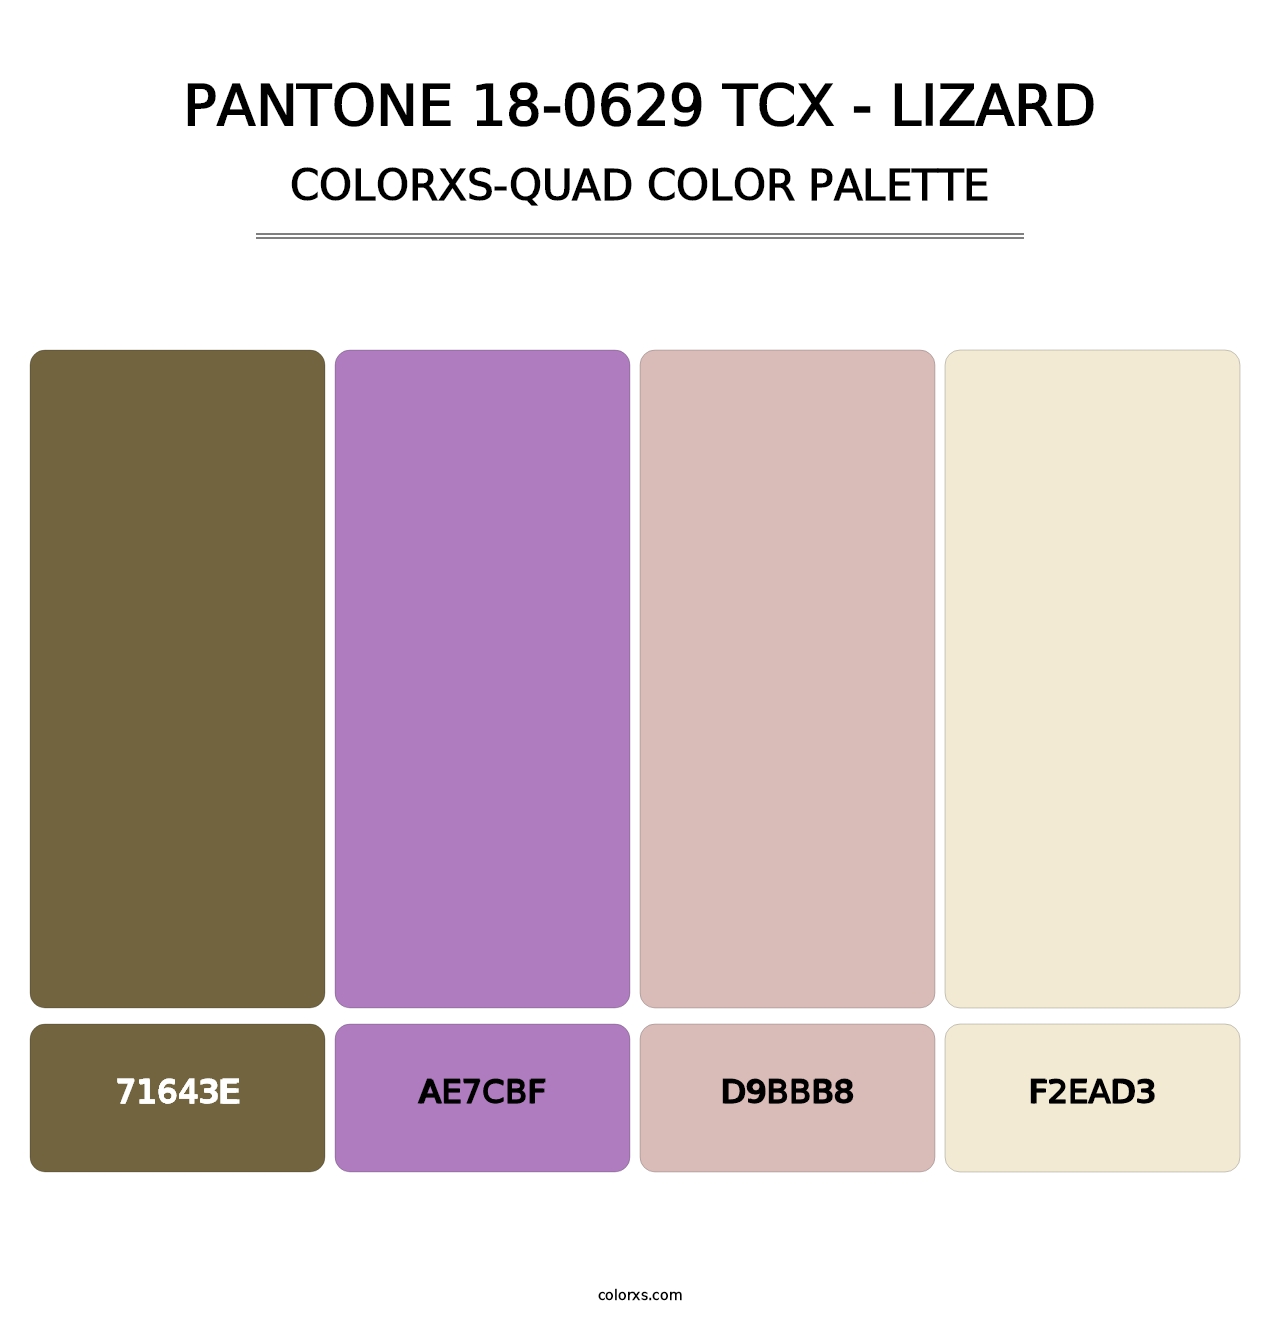 PANTONE 18-0629 TCX - Lizard - Colorxs Quad Palette